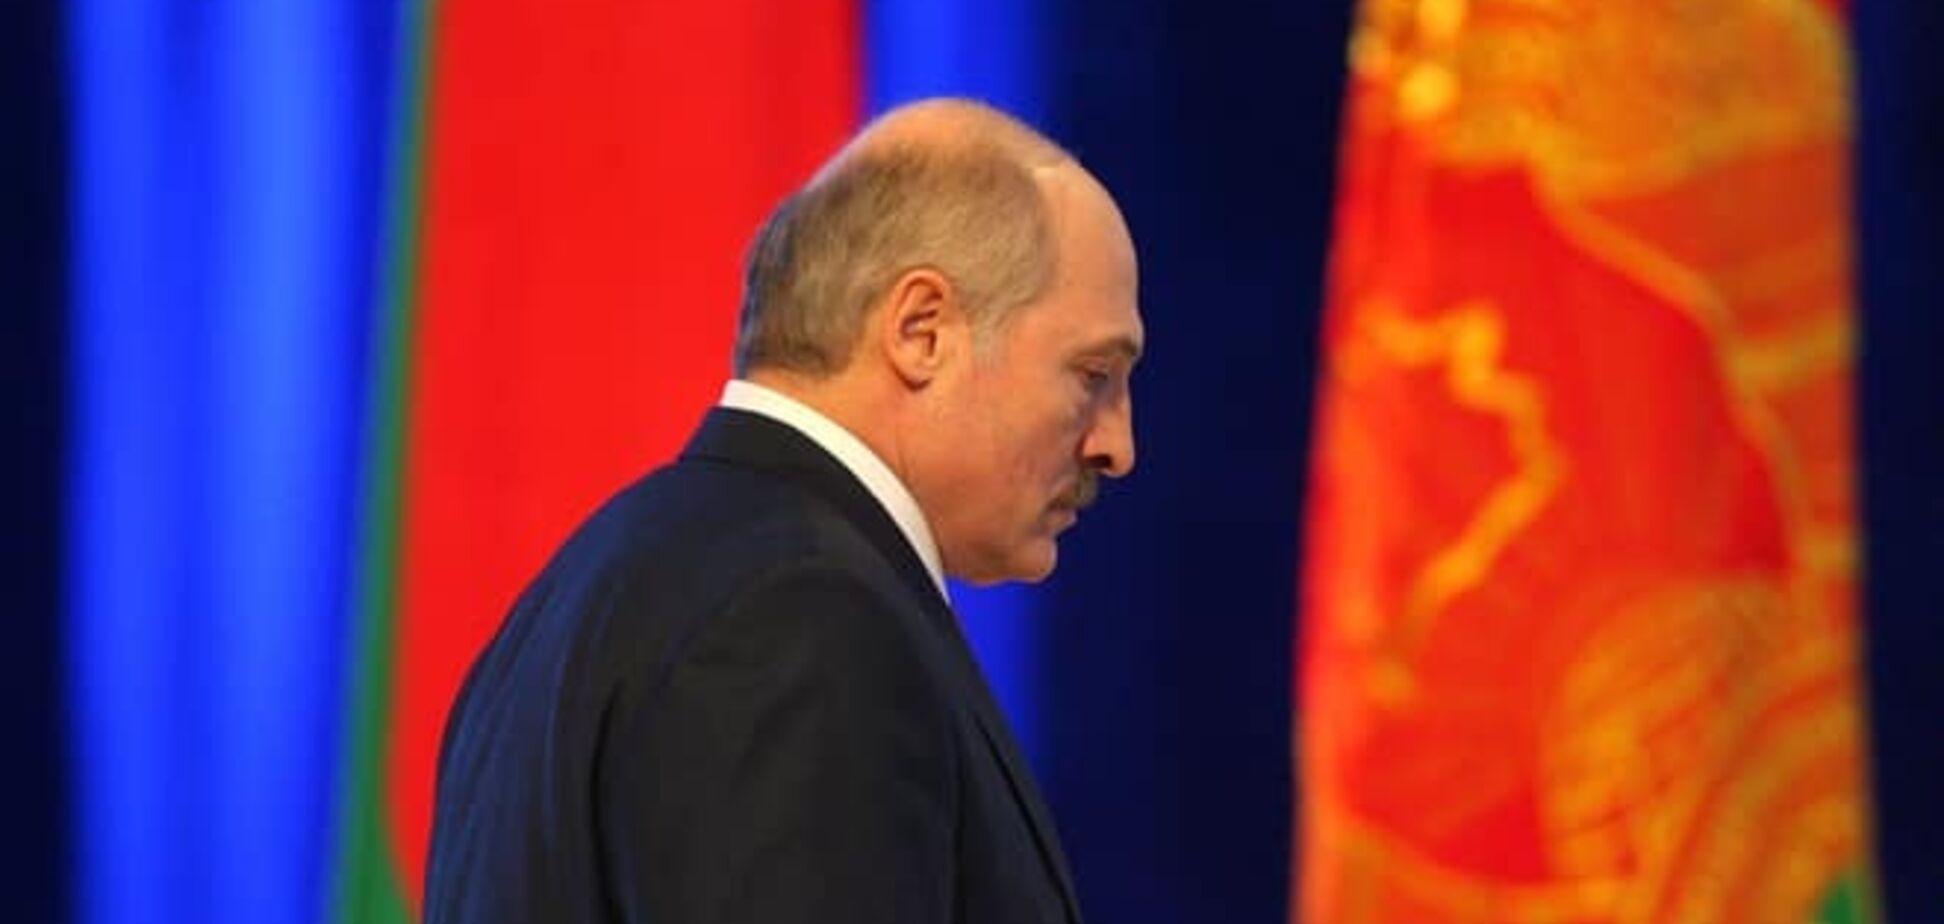 За конфліктом в Україні стоять сильні світу цього - Лукашенко